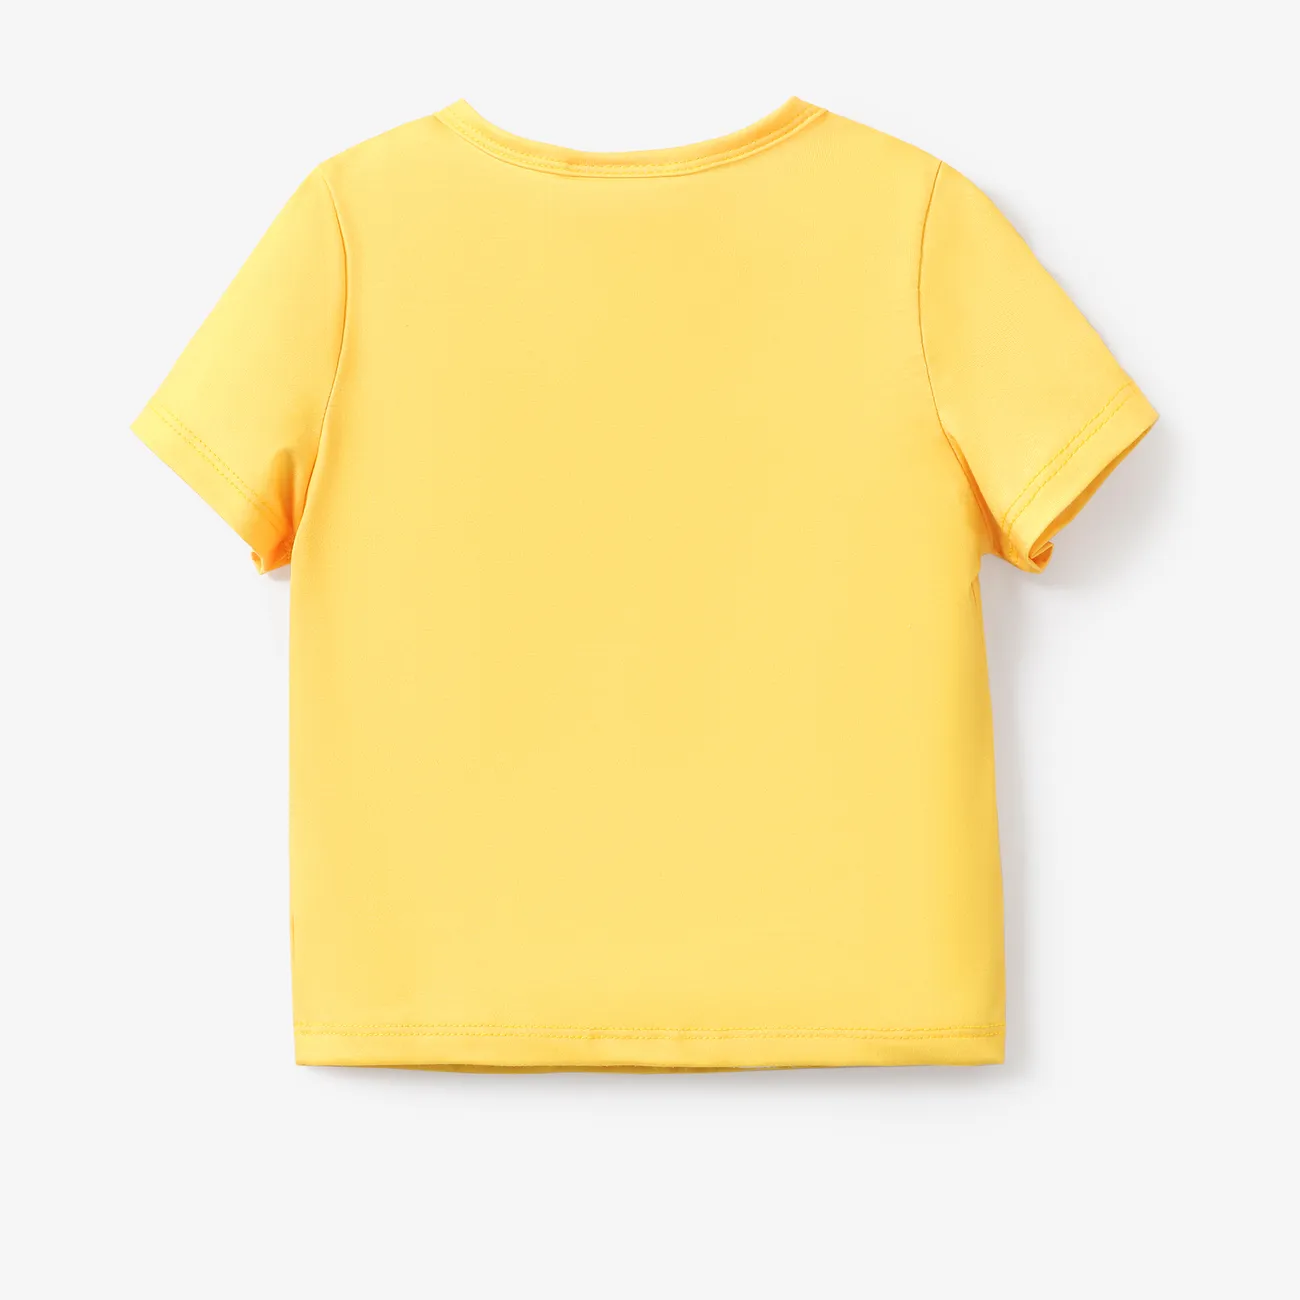 Helfer auf vier Pfoten Unisex Kindlich T-Shirts gelb big image 1